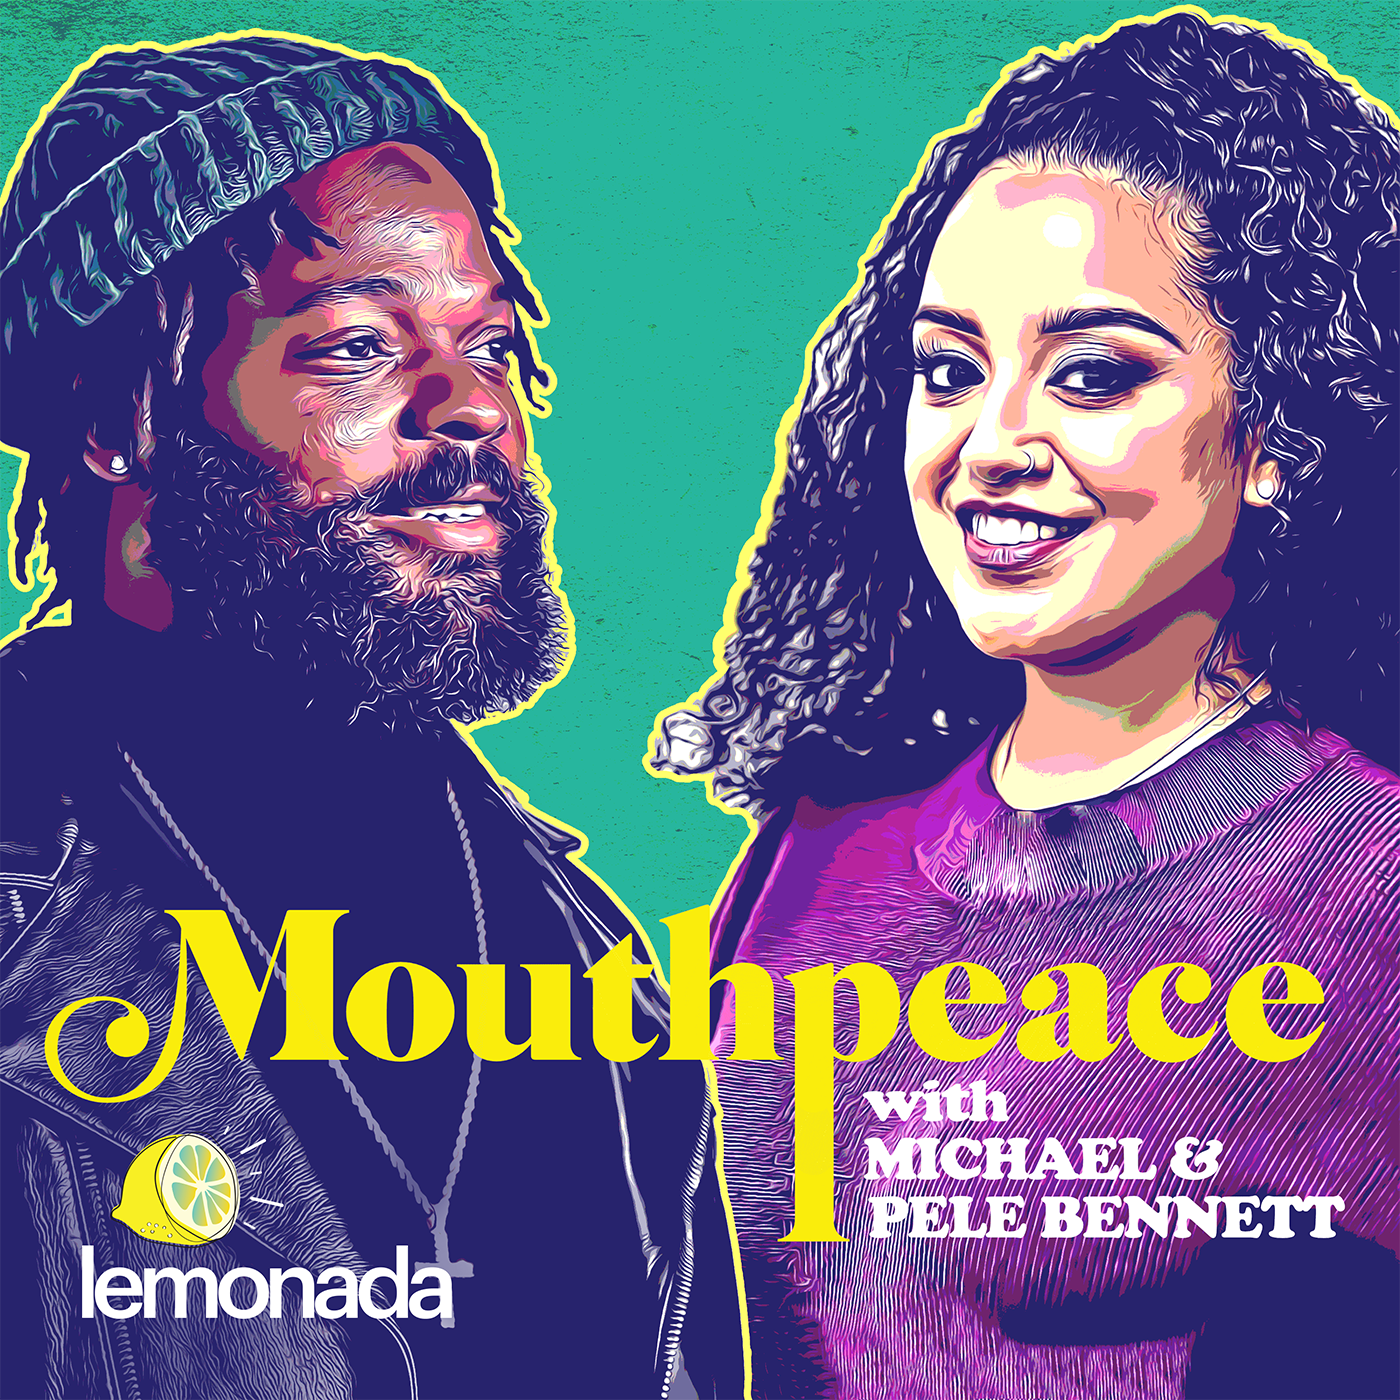 Mouthpeace with Michael Bennett & Pele Bennett